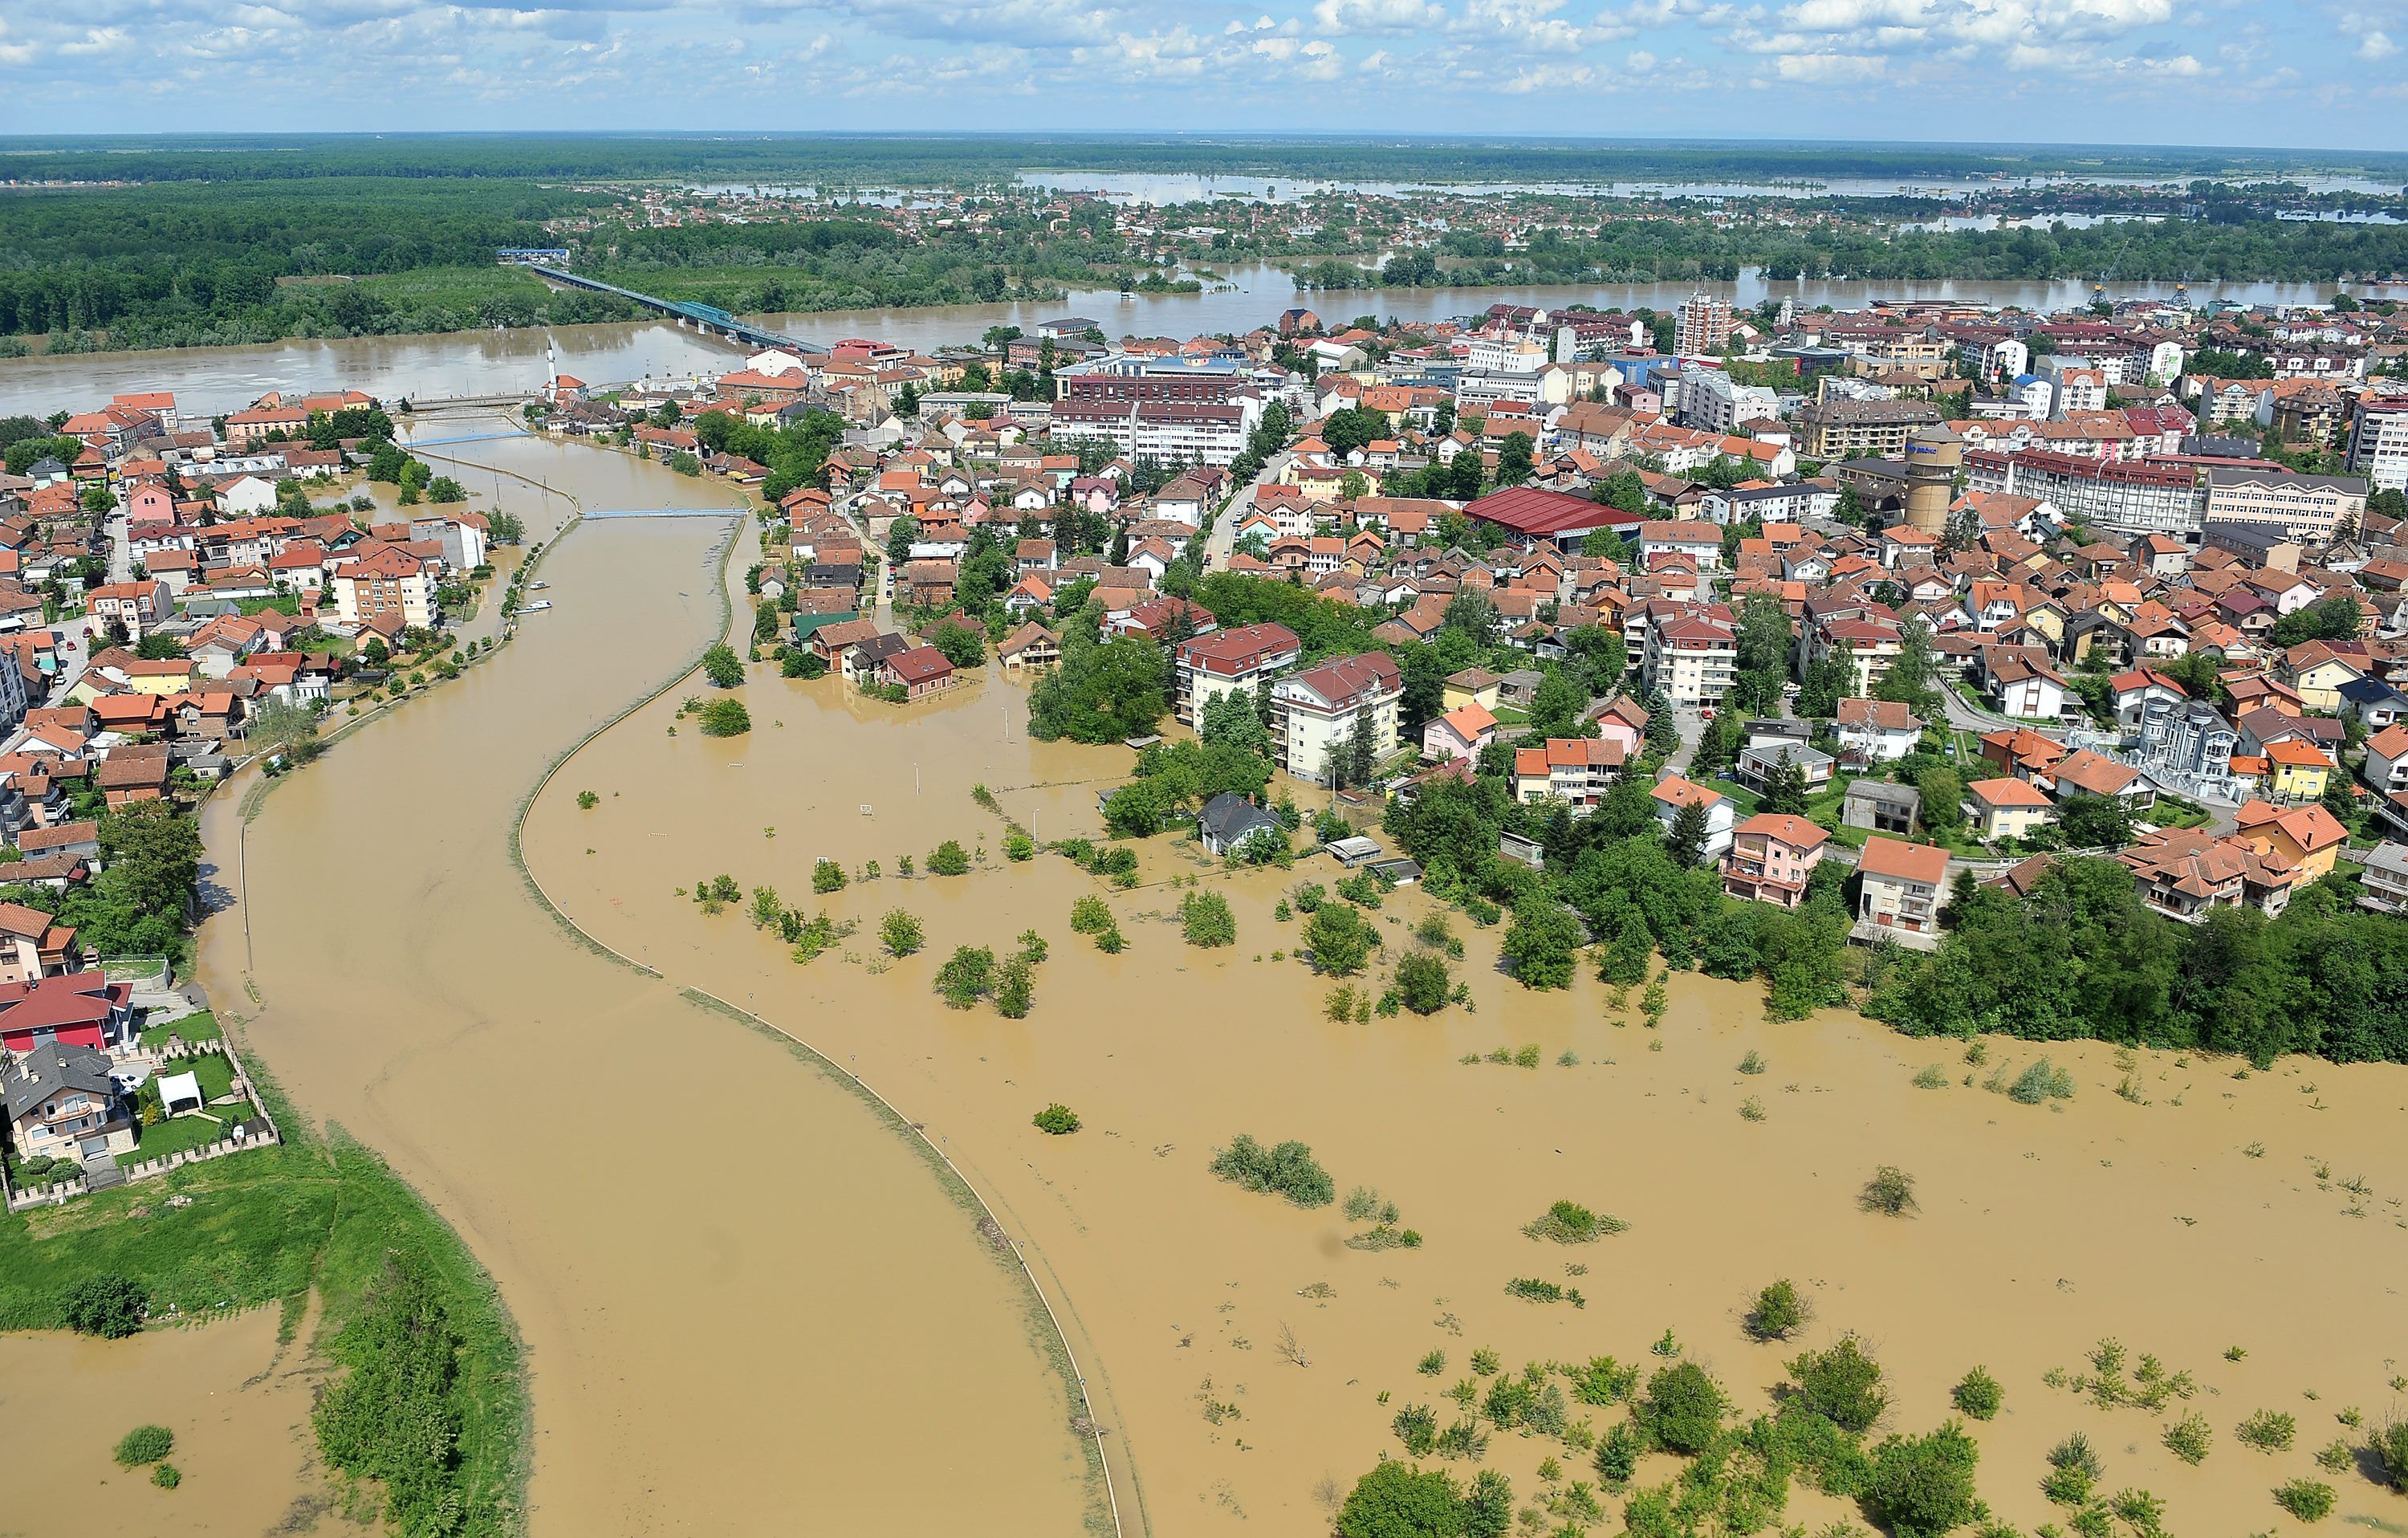 Inundatiile record din Balcani au facut peste 44 de morti si mii de sinistrati. In Bosnia a plouat in 3 zile cat in 3 luni